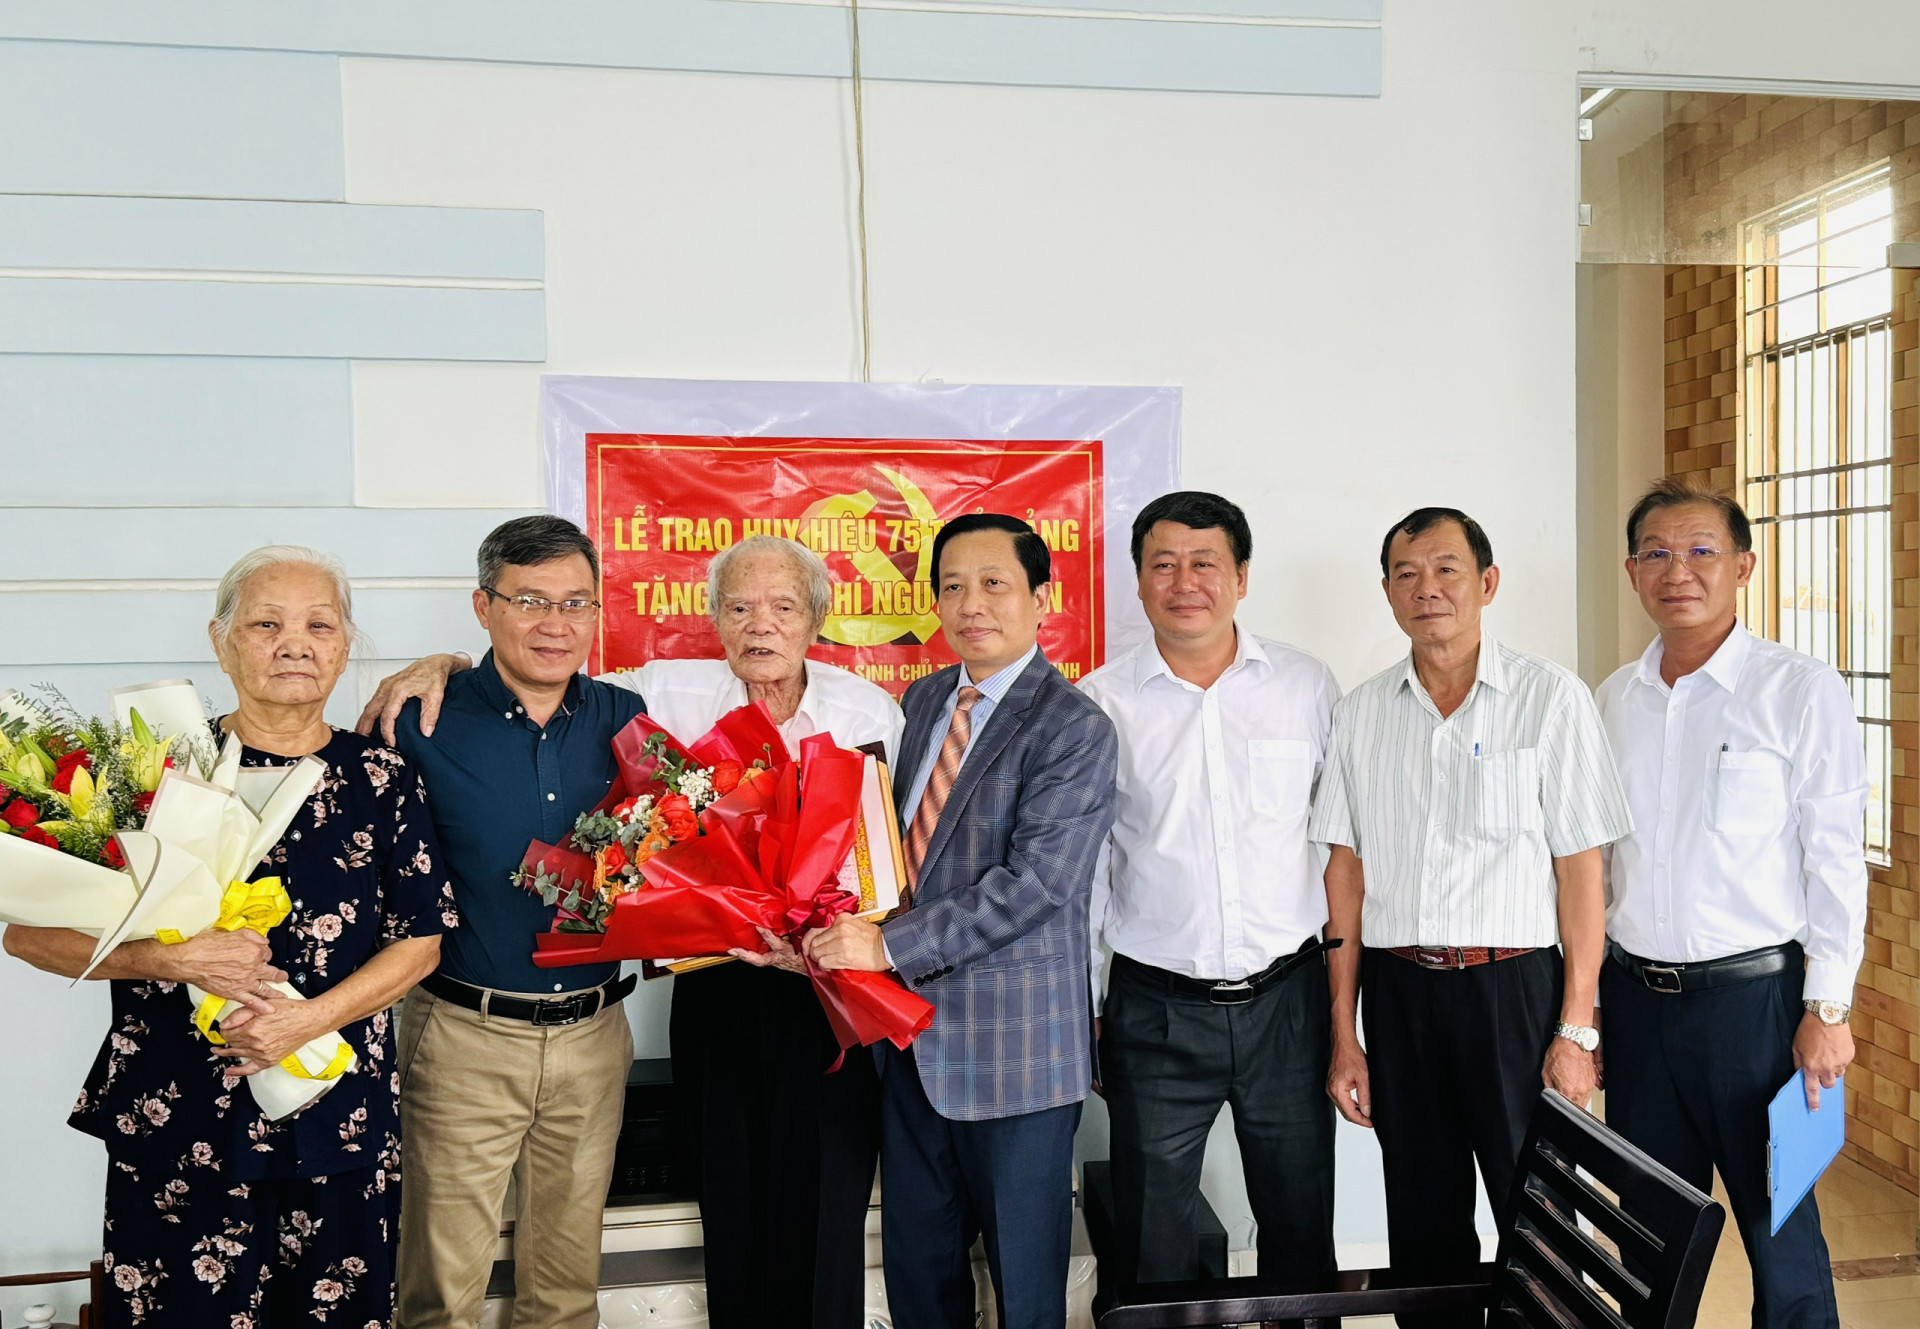 Đồng chí Hà Quốc Trị trao Huy hiệu 75 năm tuổi Đảng và chúc mừng đảng viên Nguyễn Diện